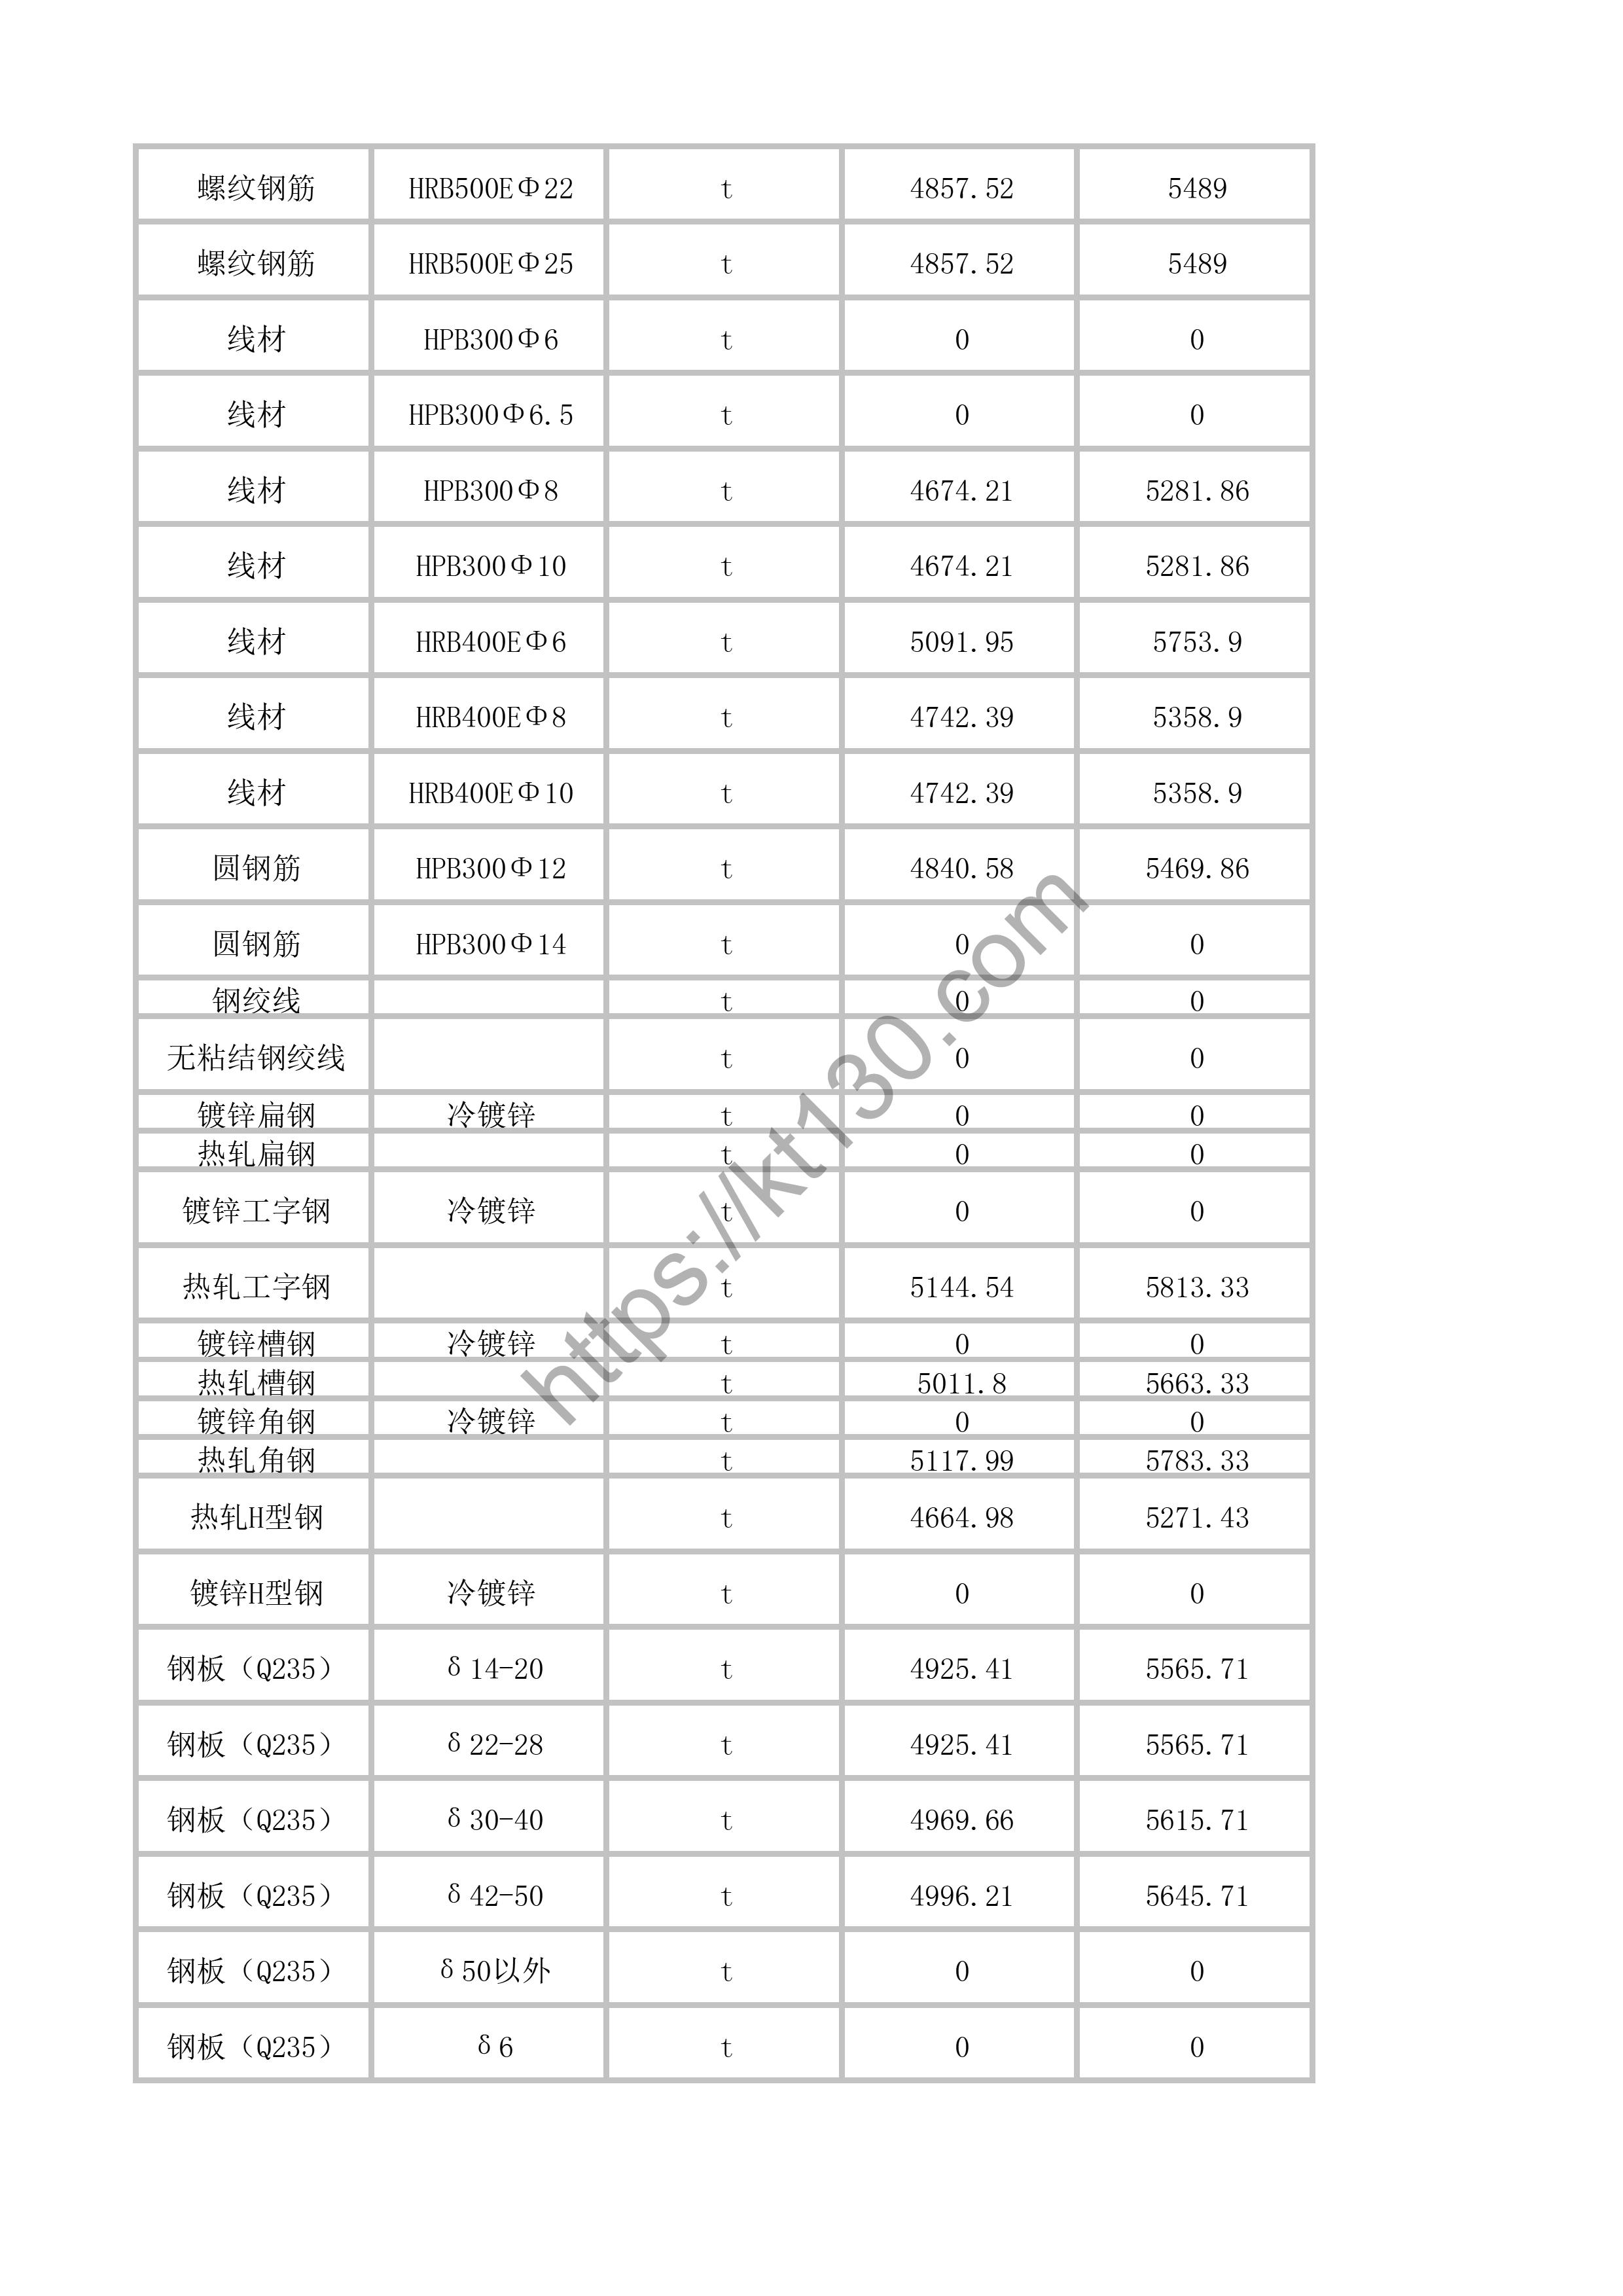 福州2022年4月建筑材料价_黑色及有色金属_41275